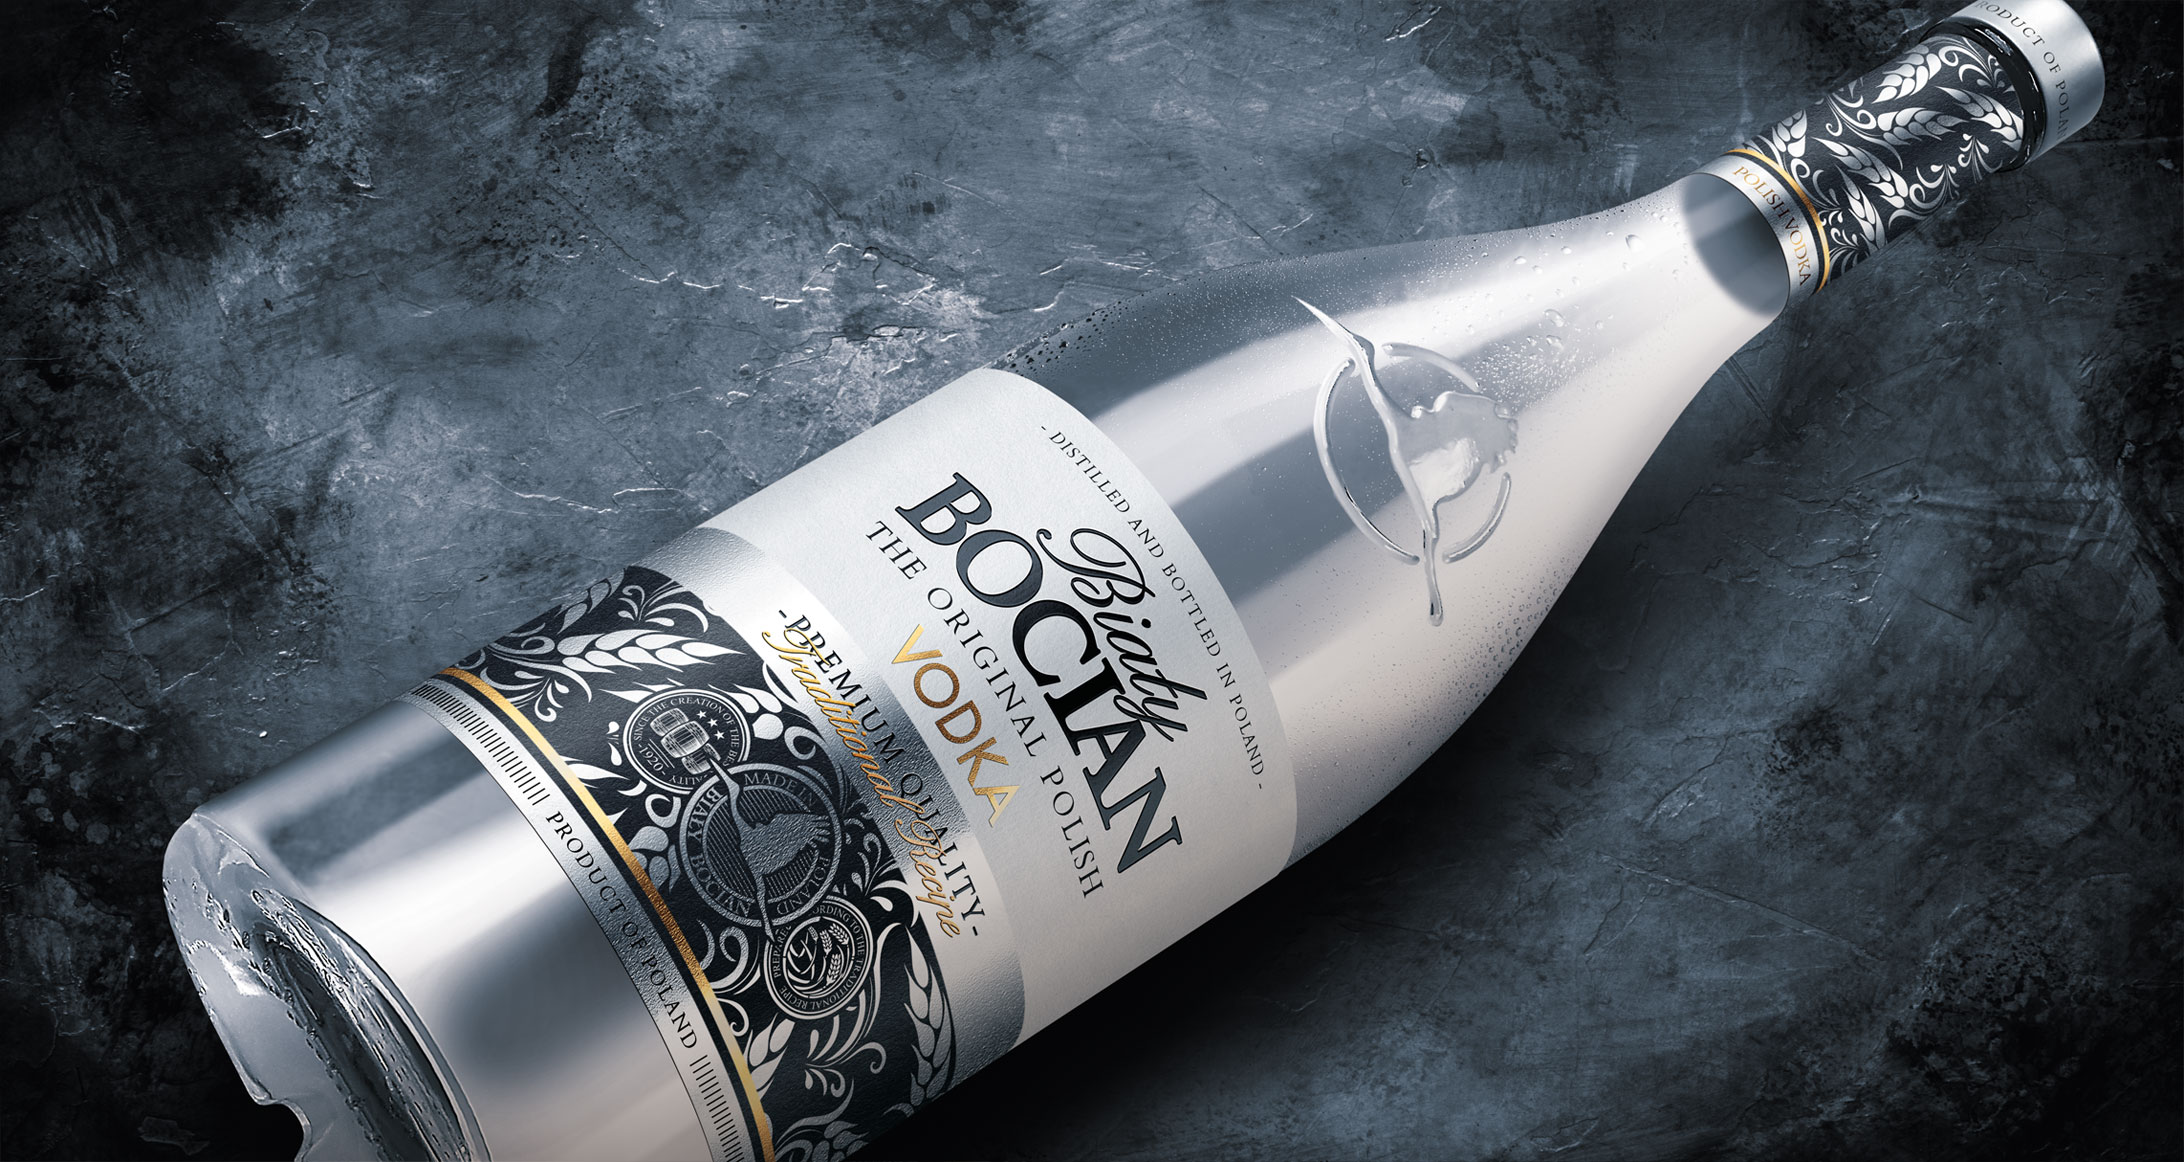 biały bocian vodka packaging facelift